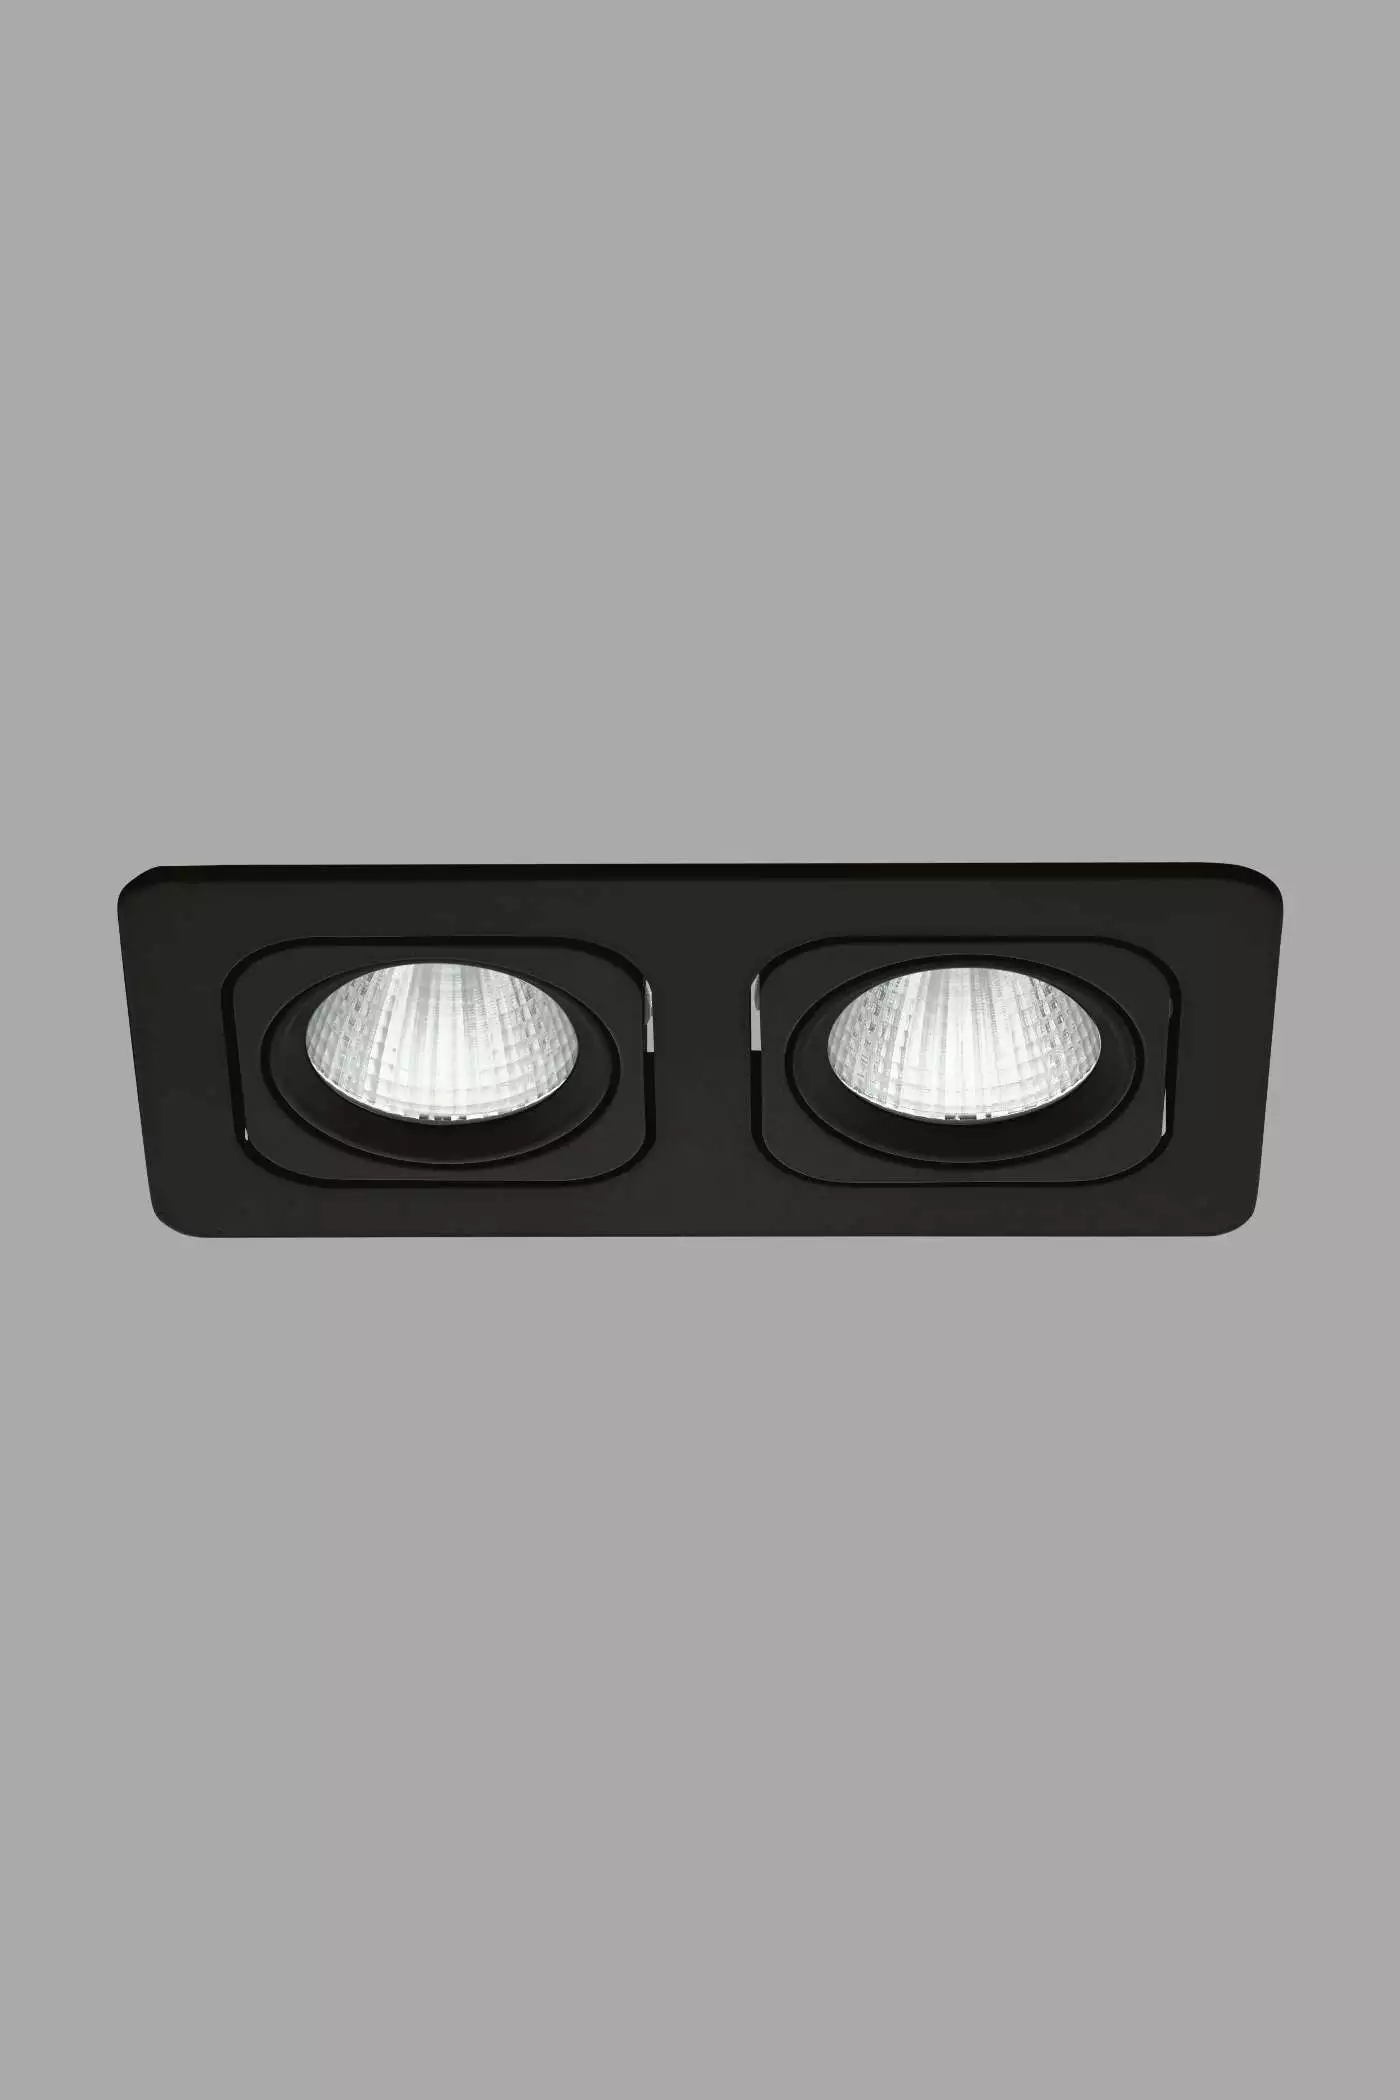   
                        Точечный светильник EGLO  (Австрия) 93605    
                         в стиле хай-тек.  
                        Тип источника света: встроенные светодиоды led.                         Форма: прямоугольник.                                                                          фото 1